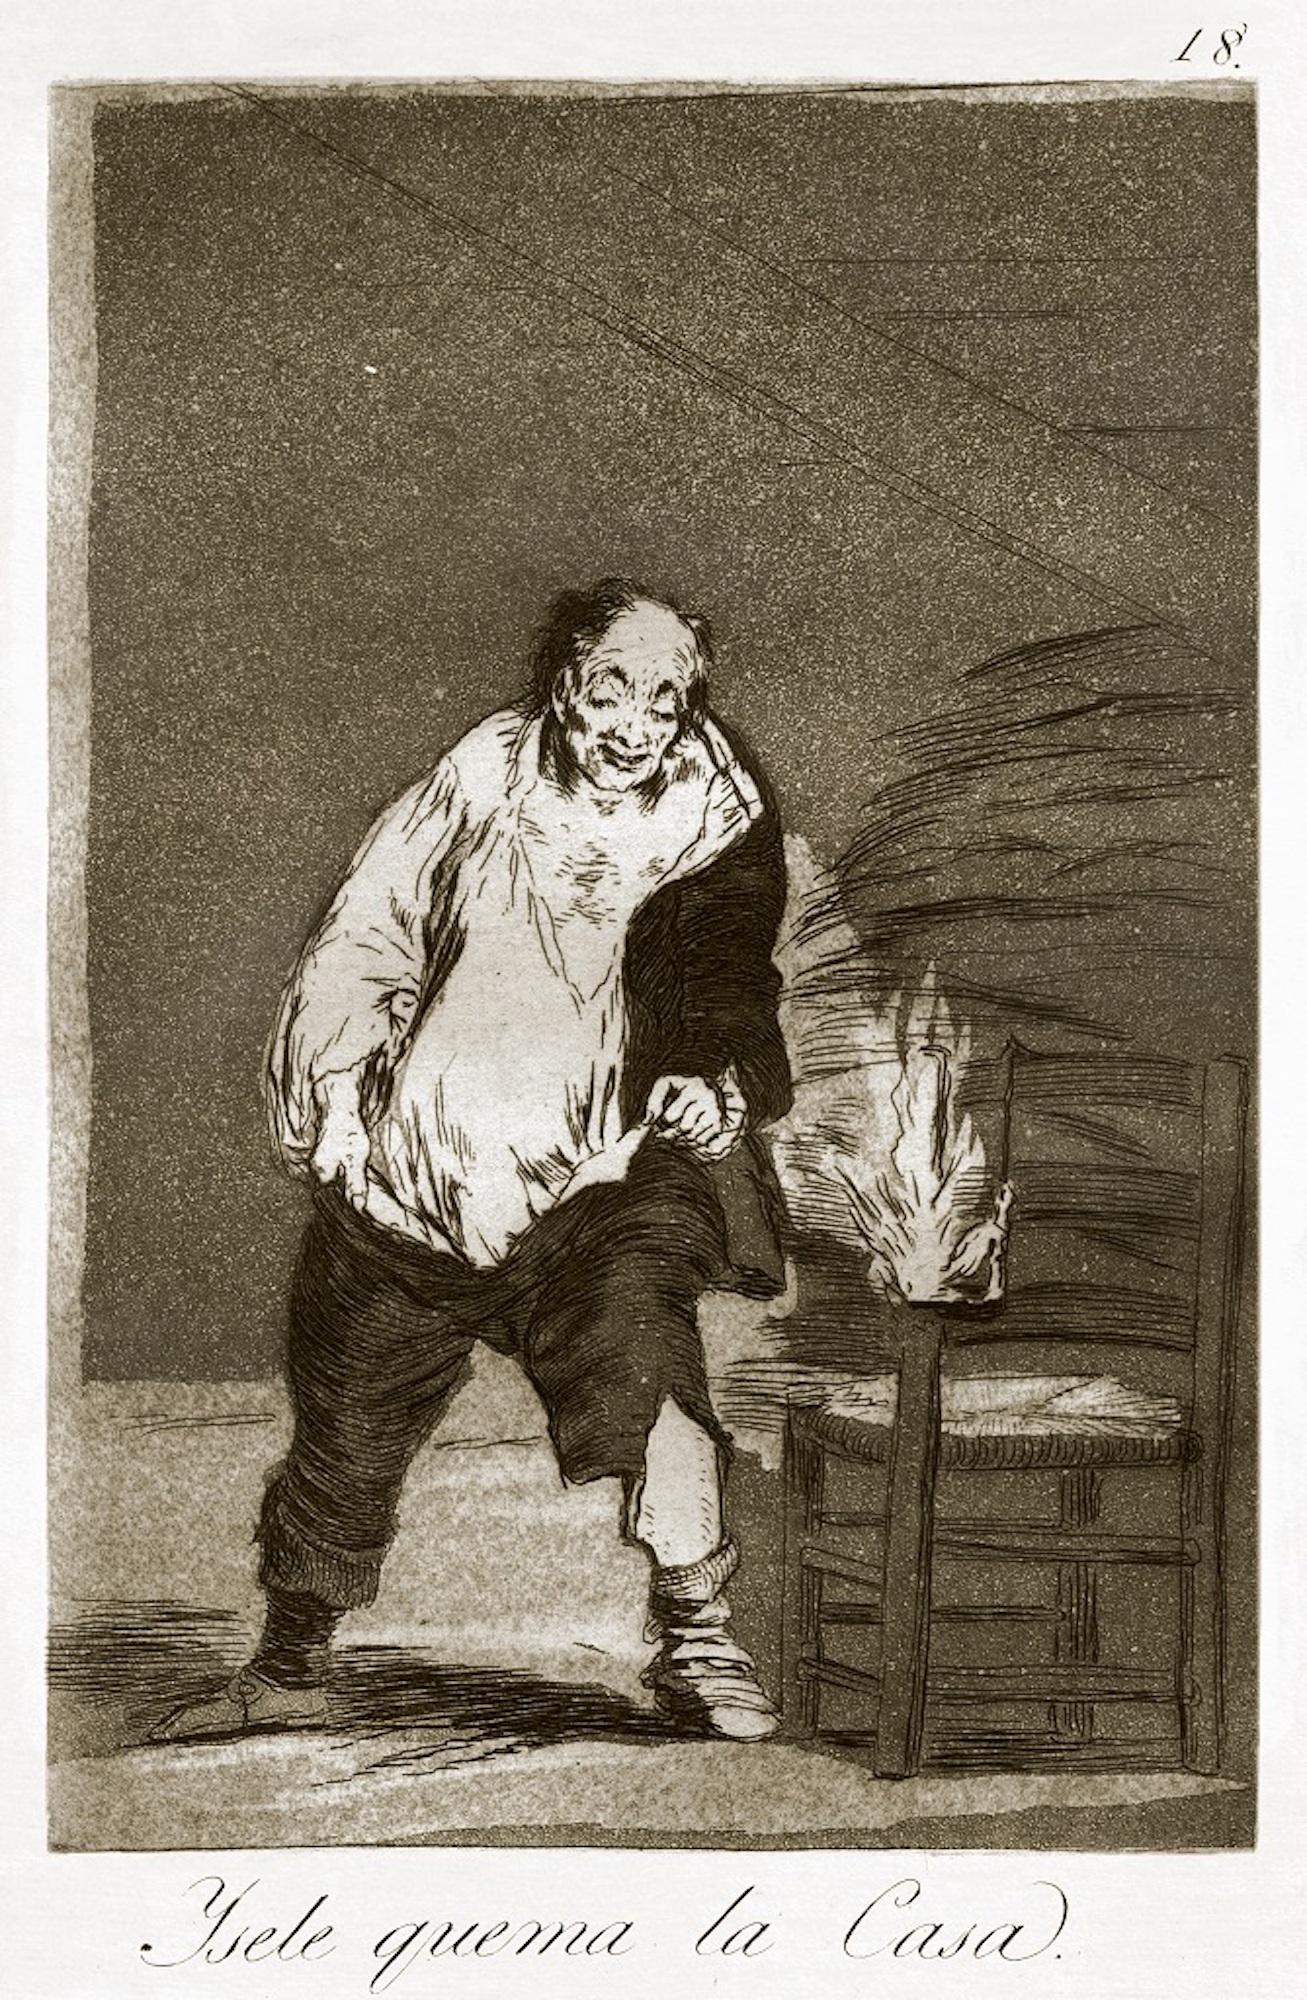 Y se le quema la casa  - Original Etching by Francisco Goya - 1868